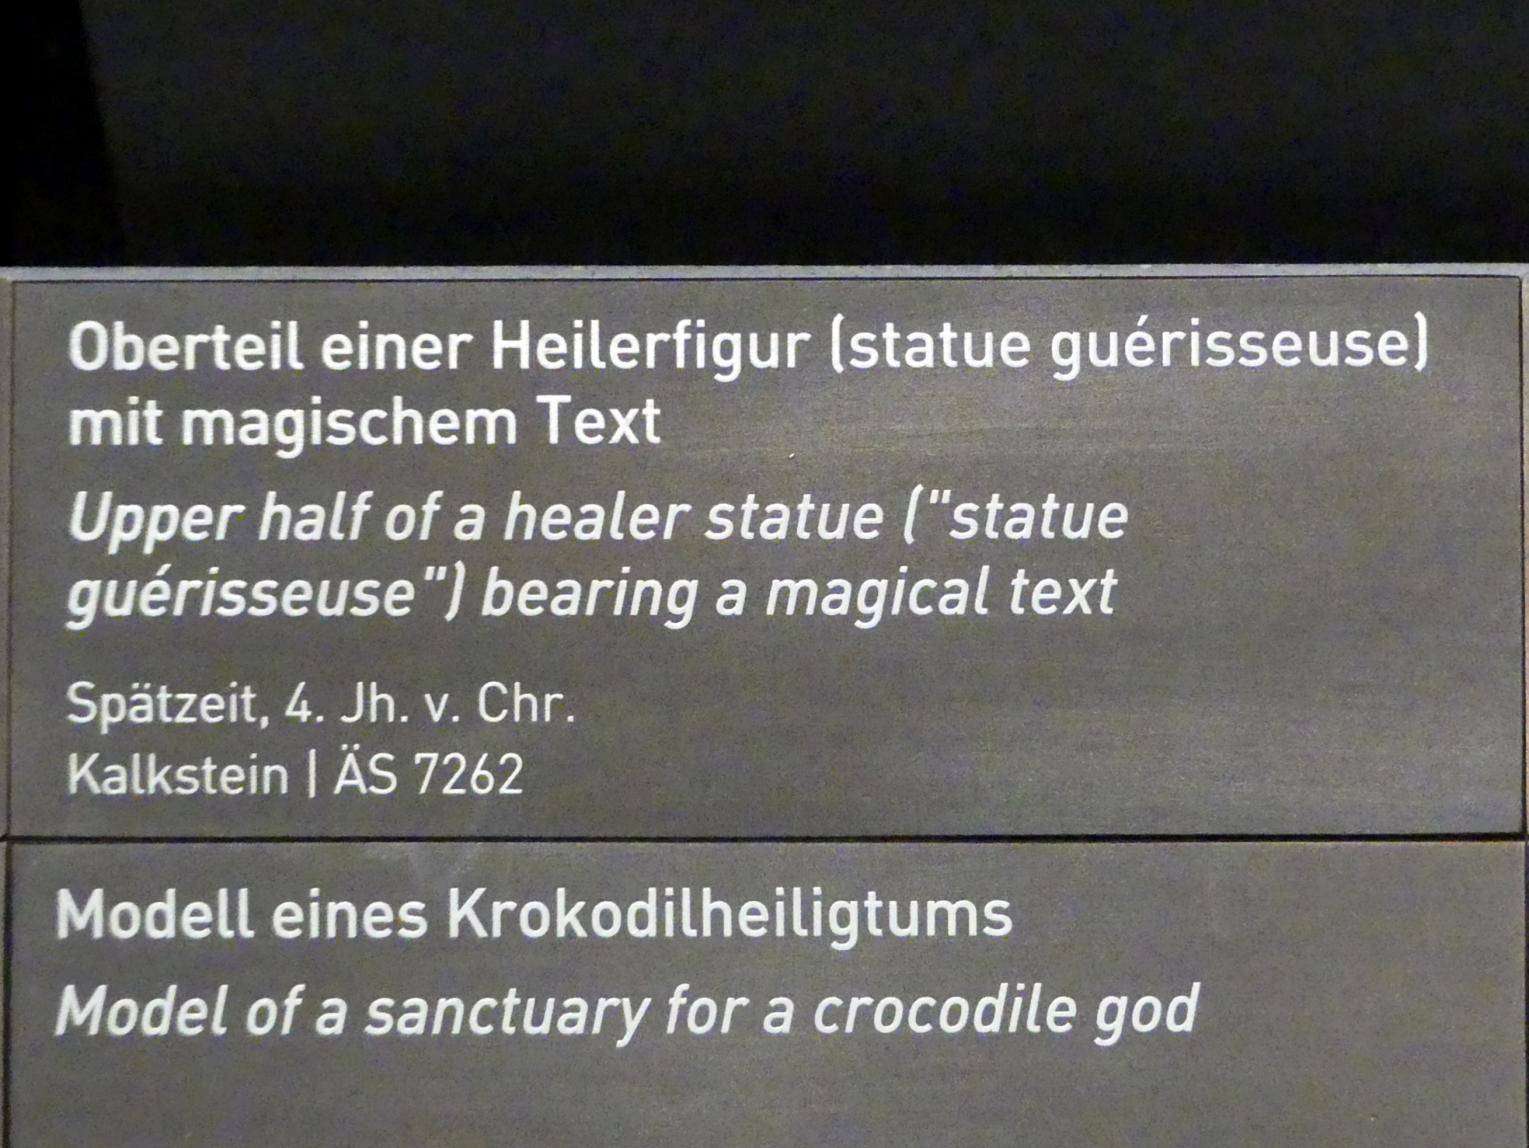 Oberteil einer Heilerfigur (statue guérisseuse) mit magischem Text, Spätzeit, 360 - 342 v. Chr., 400 - 300 v. Chr., Bild 2/2